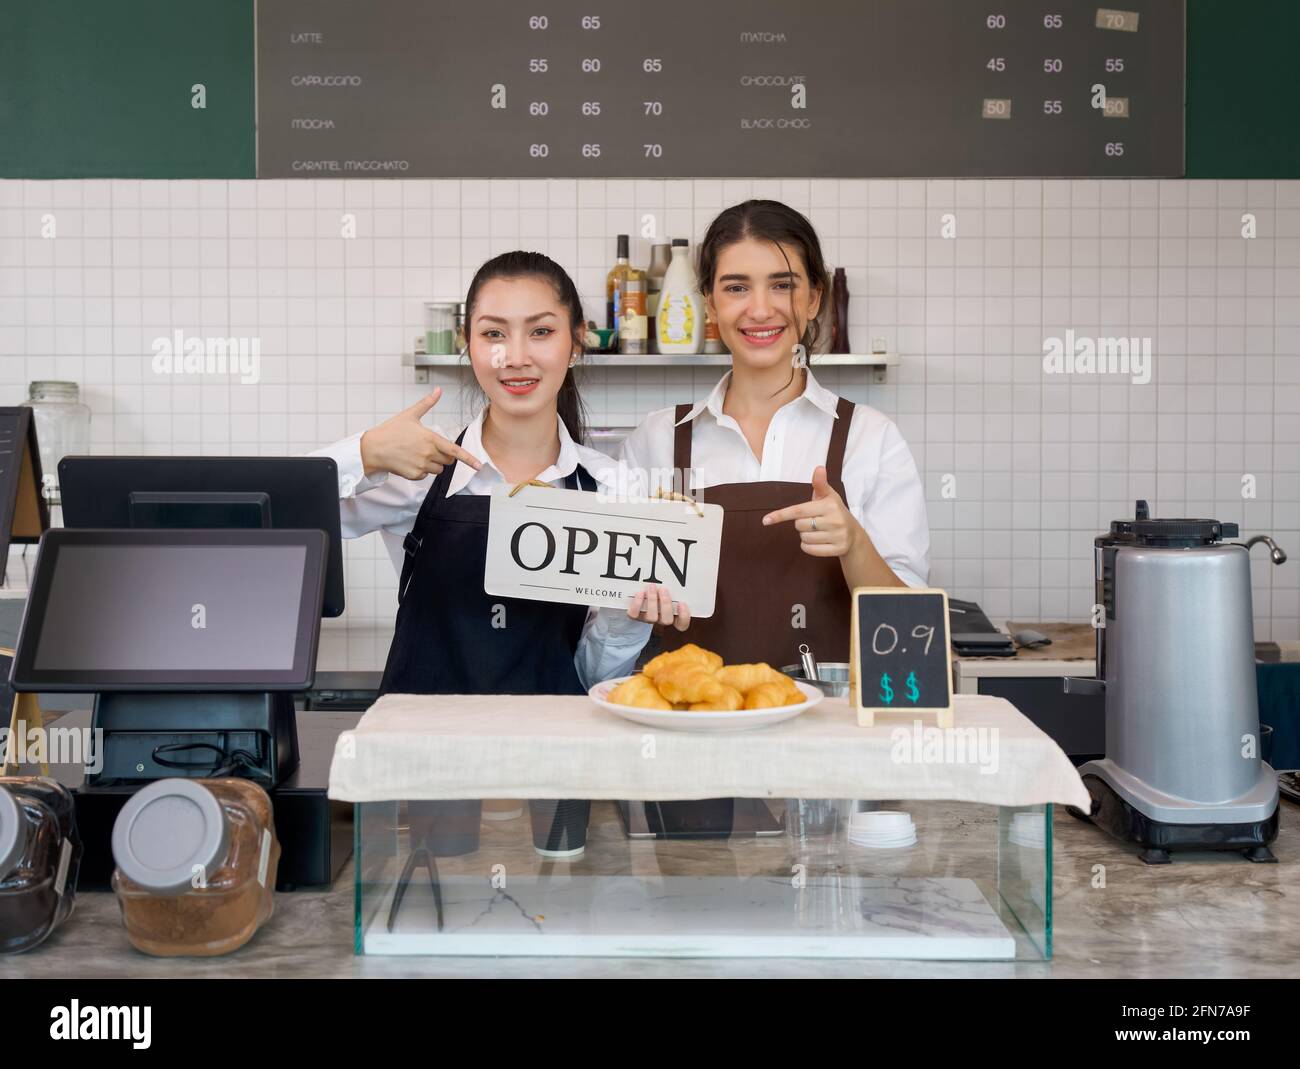 Un joven comerciante asiático y un barista caucásico con una sonrisa tiene un cartel ABIERTO frente a una cafetería. Ambiente matutino en una cafetería. Foto de stock